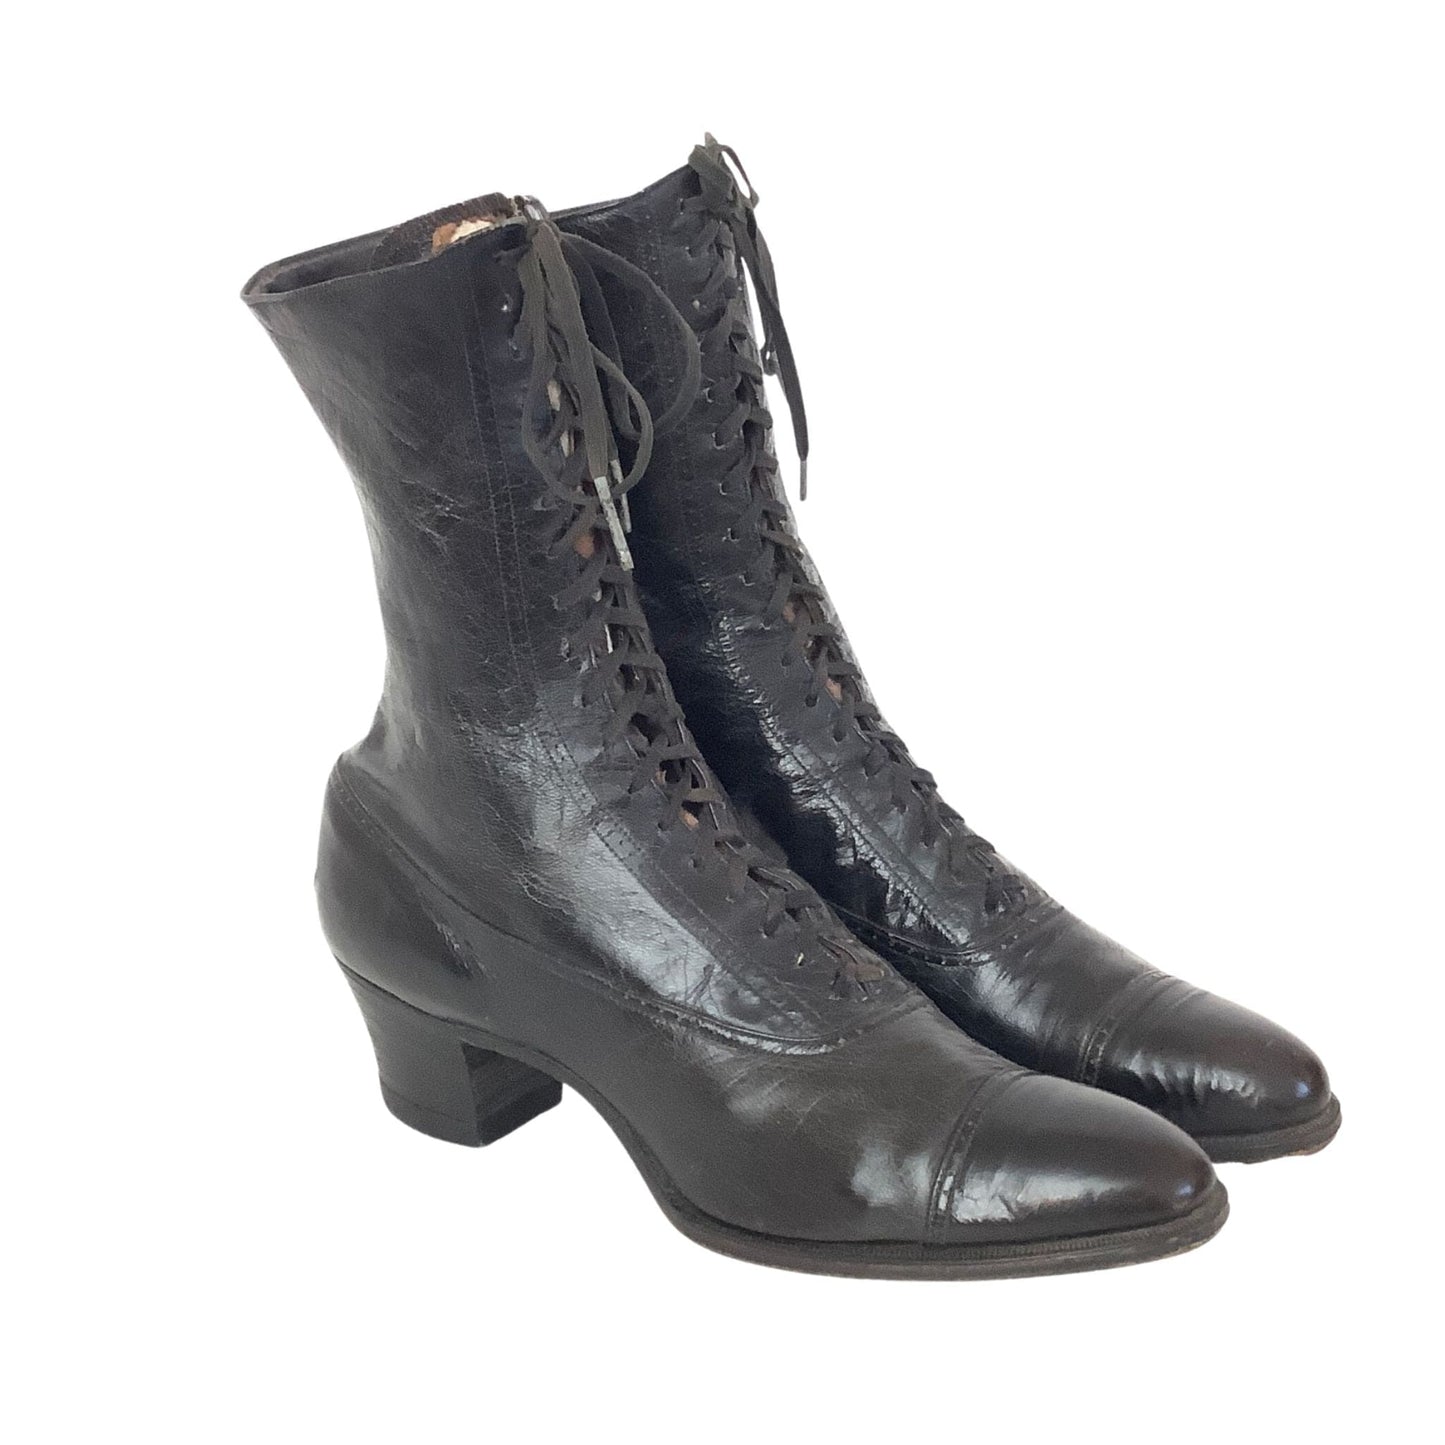 Antique Ankle Boots 7 / Black / Vintage 1920s